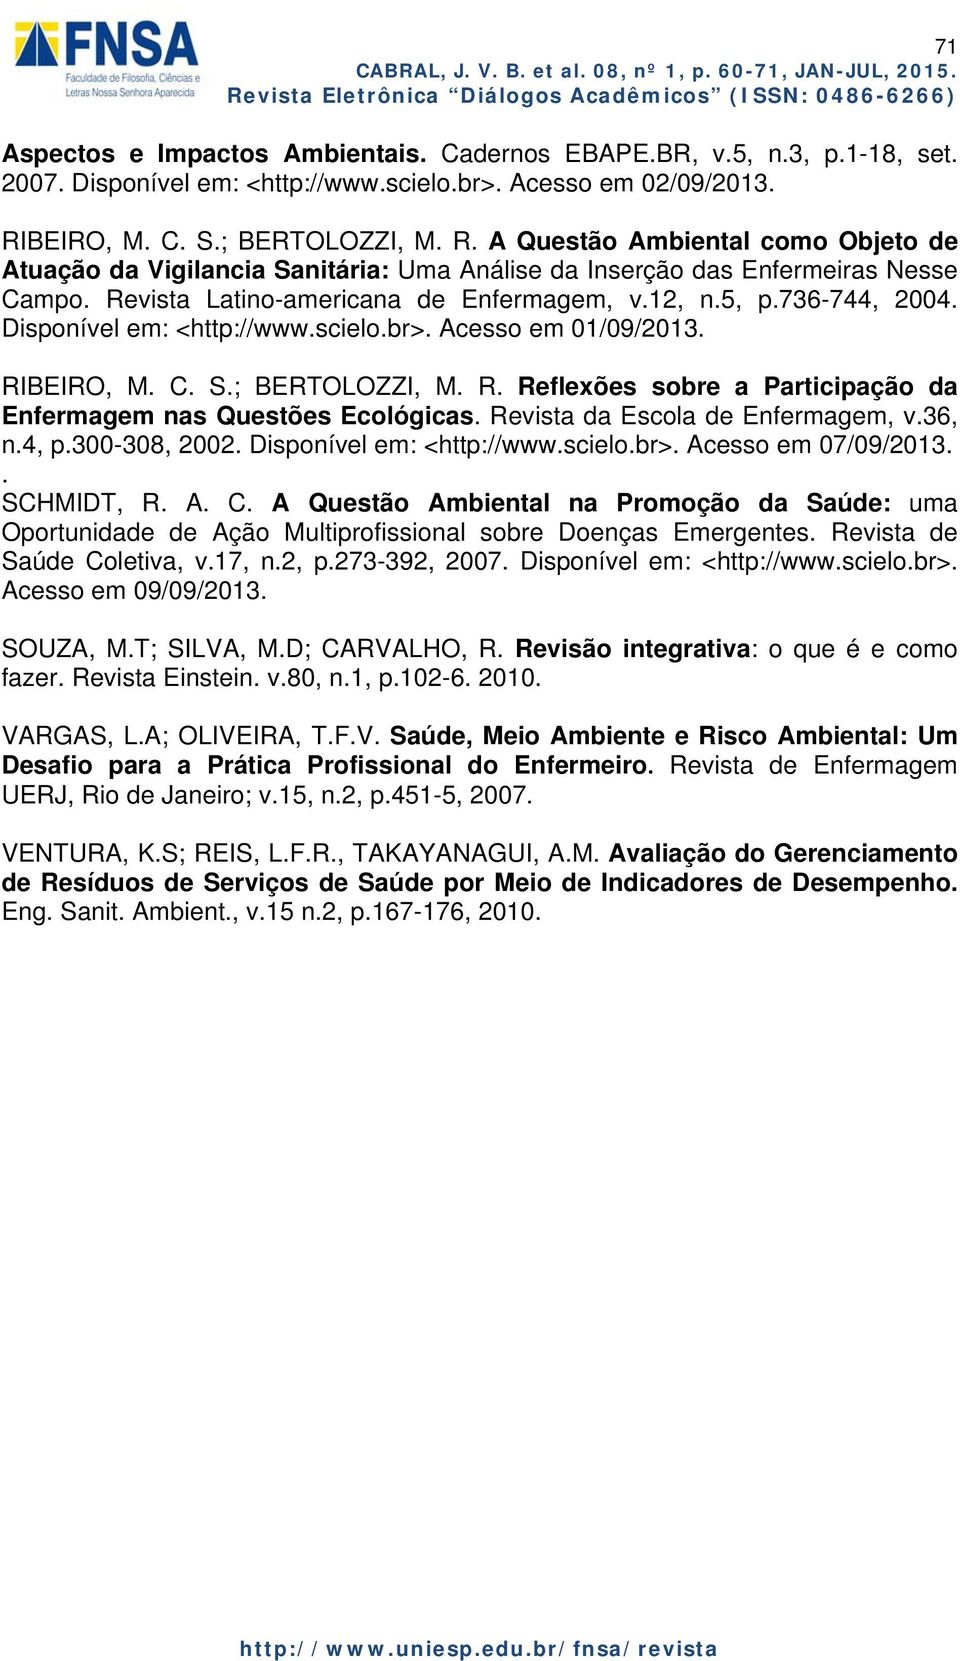 12, n.5, p.736-744, 2004. Disponível em: <http://www.scielo.br>. Acesso em 01/09/2013. RIBEIRO, M. C. S.; BERTOLOZZI, M. R. Reflexões sobre a Participação da Enfermagem nas Questões Ecológicas.